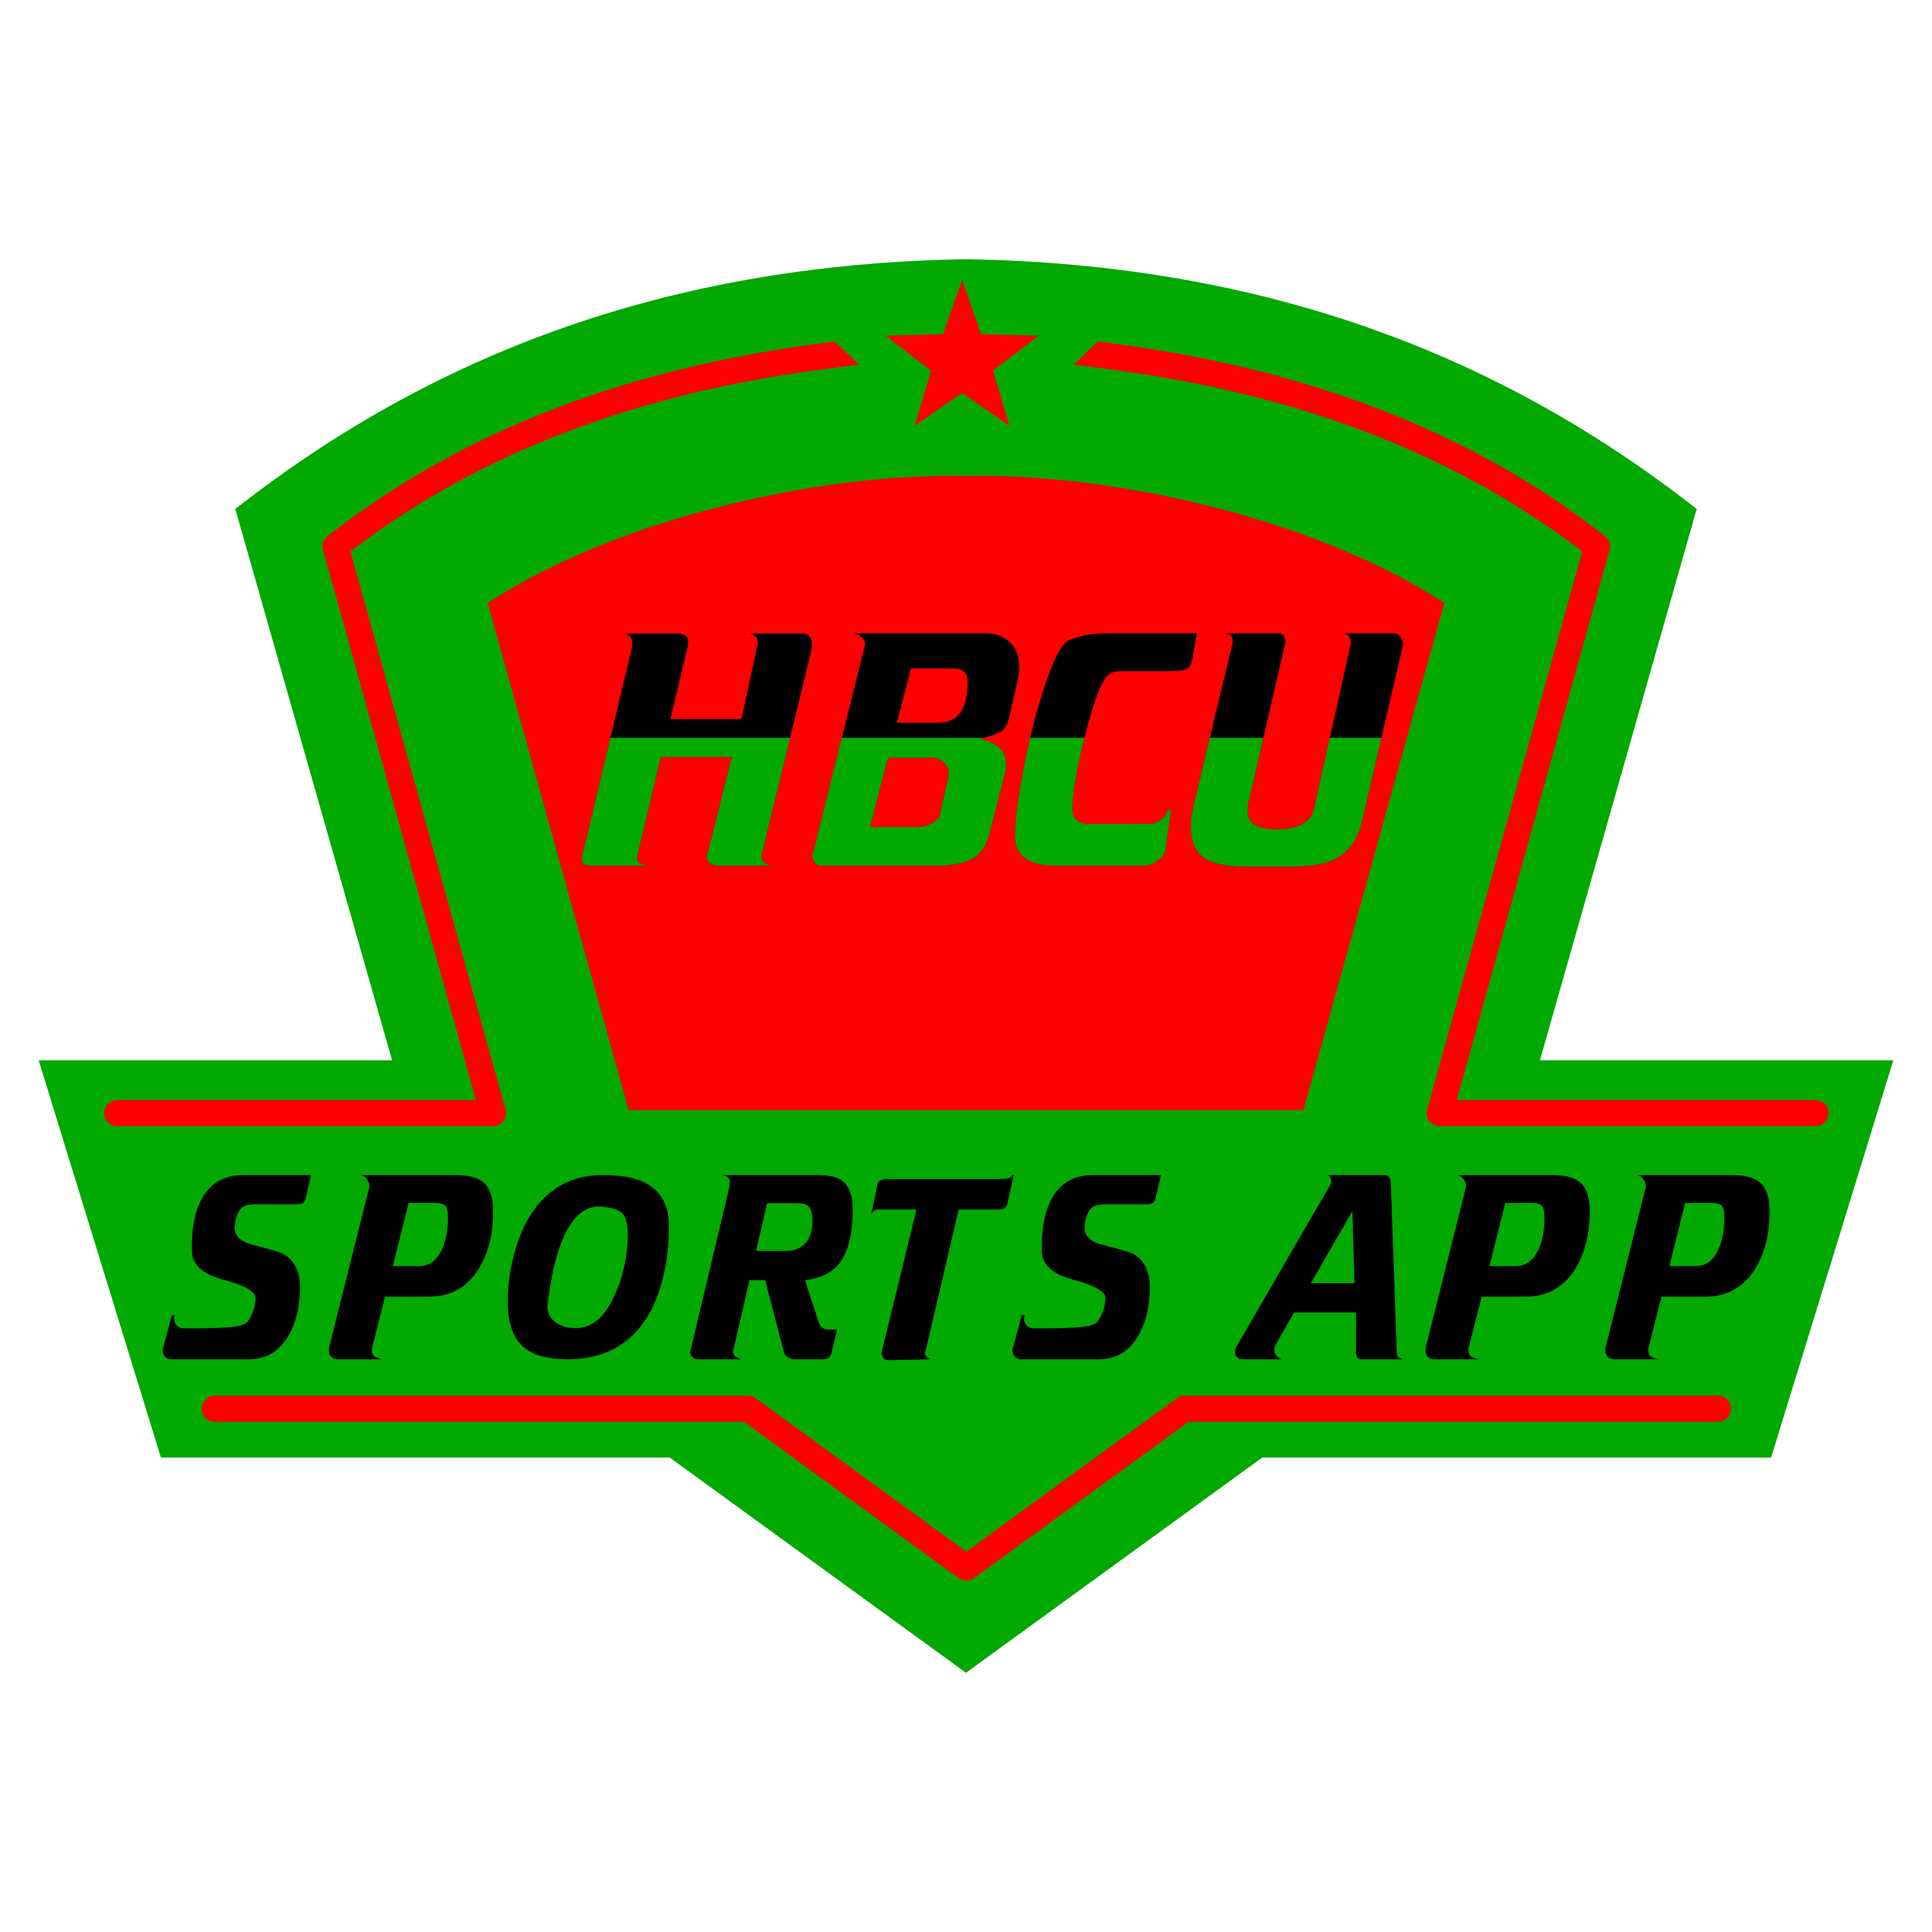 HBCU Sports App Press and Ride MEAC, SWAC Tournament Updates 3/8/18